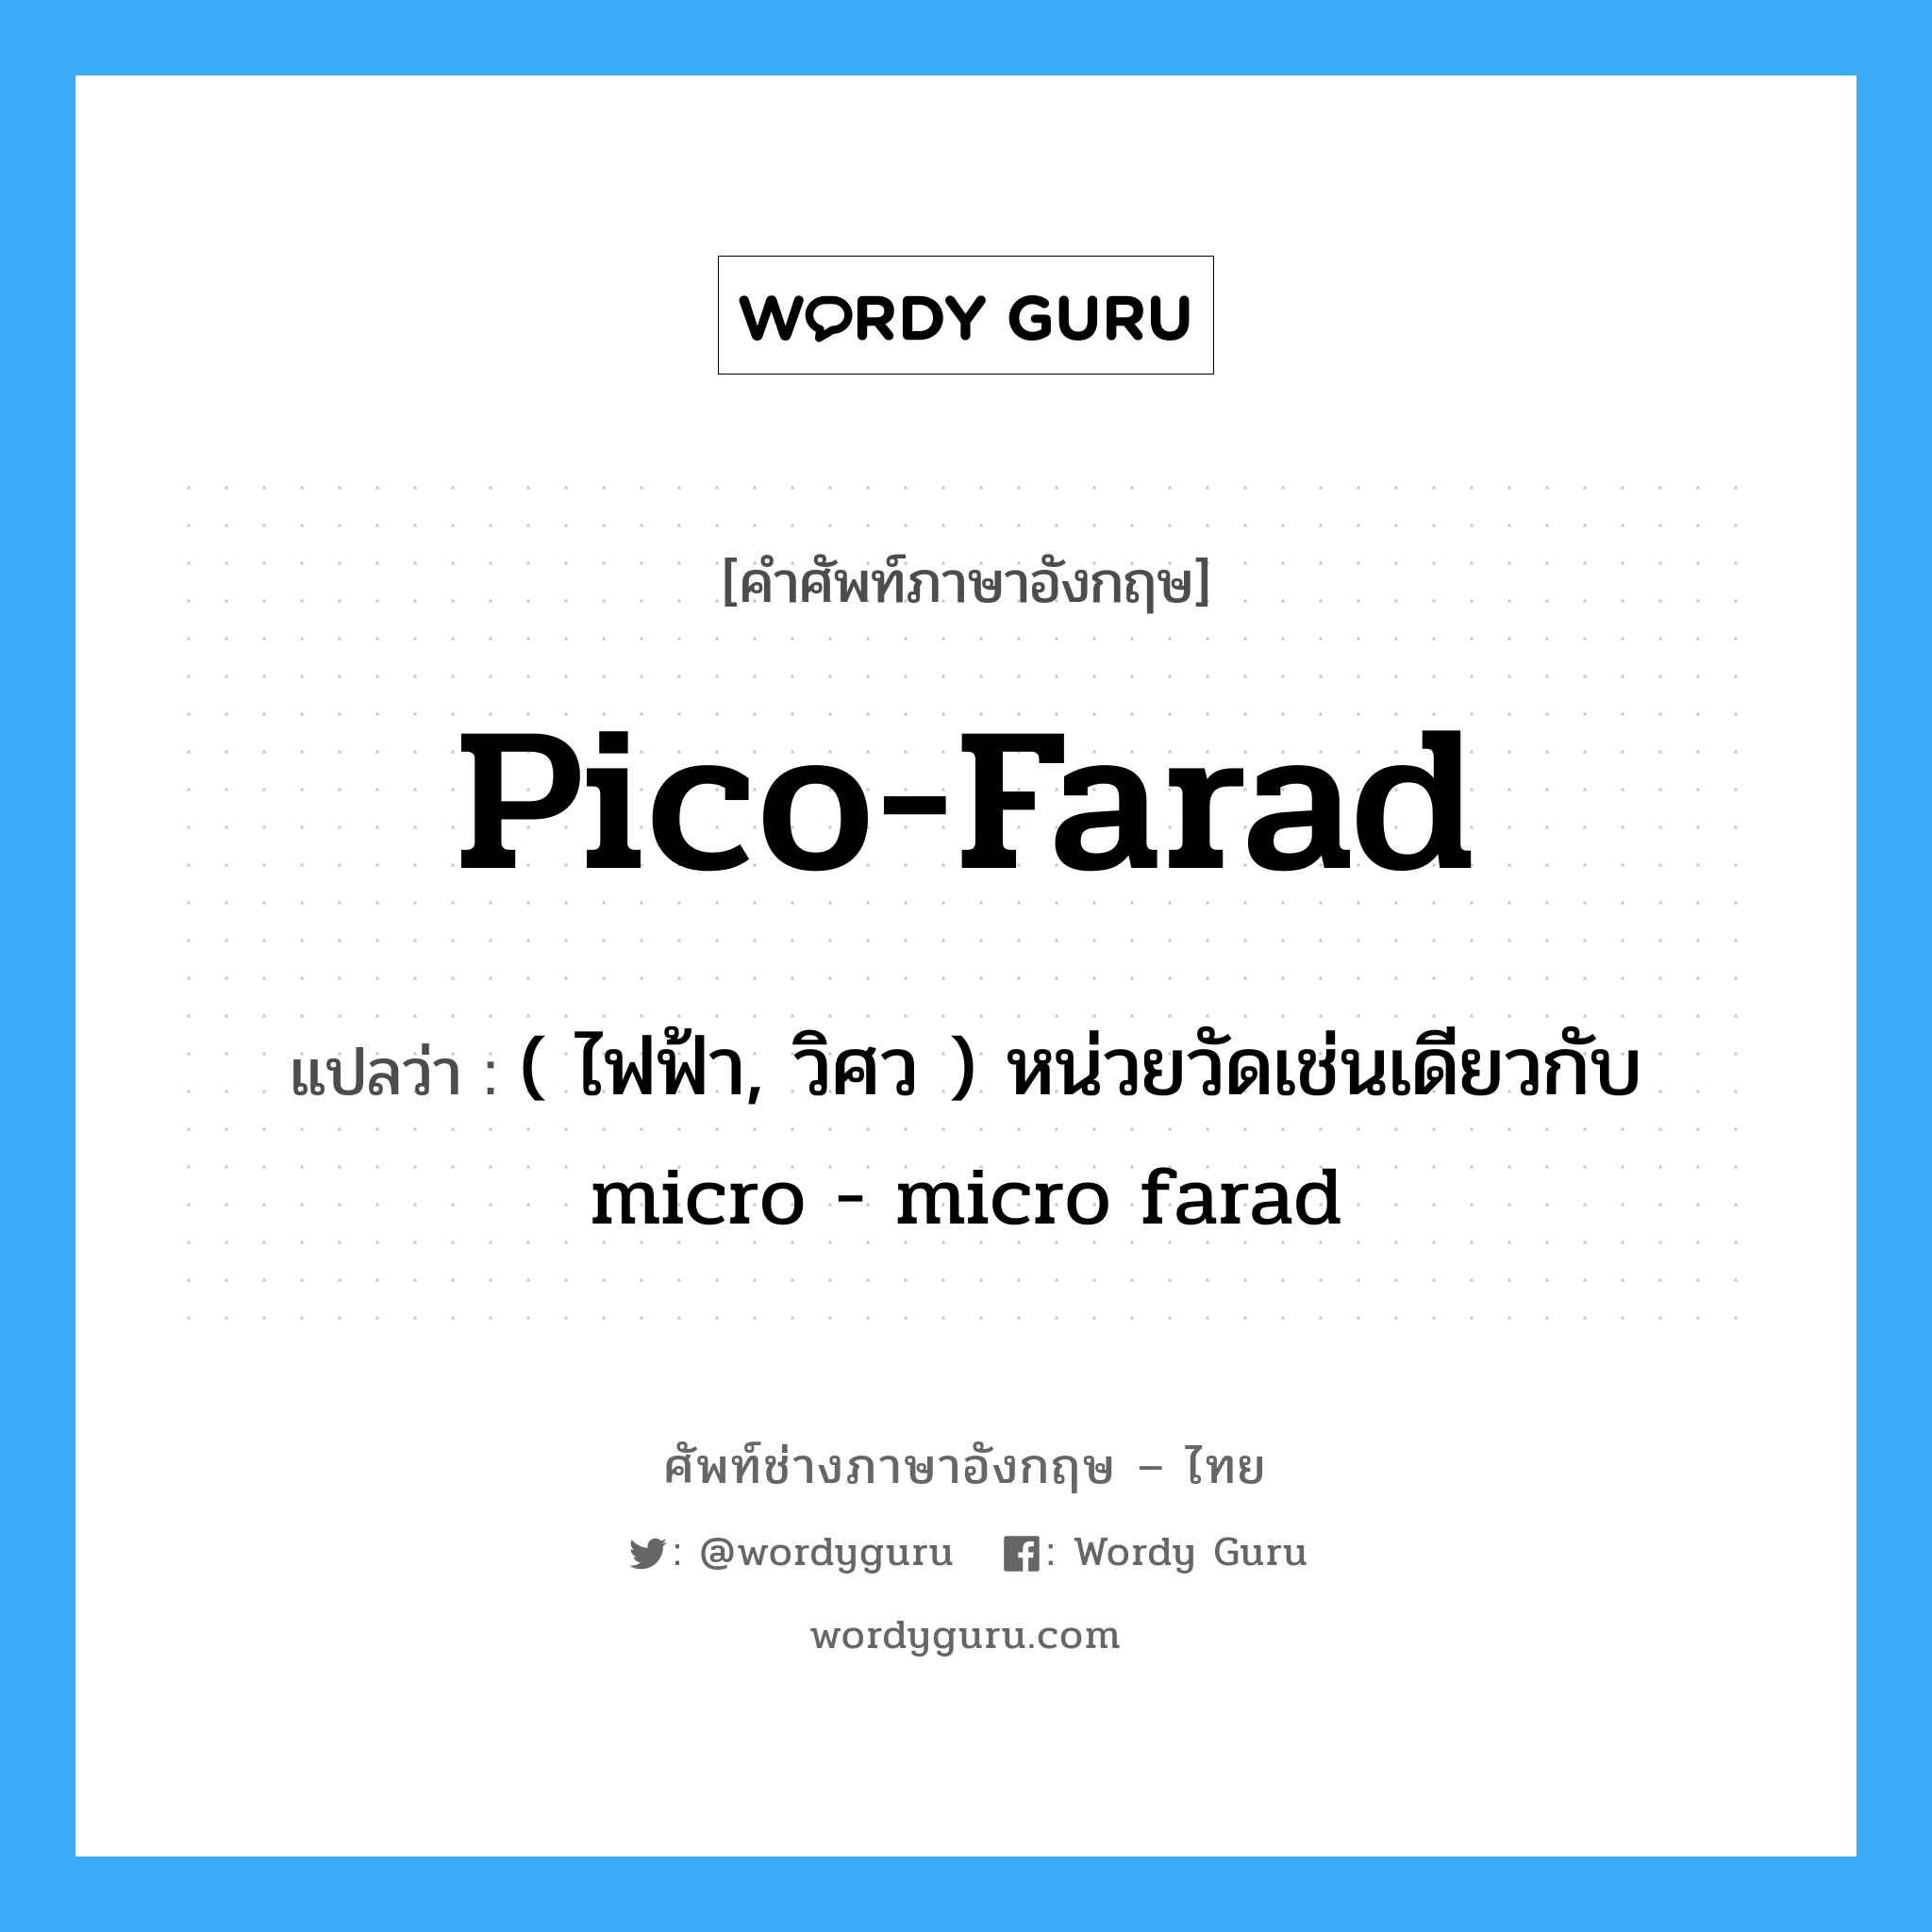 ( ไฟฟ้า, วิศว ) หน่วยวัดเช่นเดียวกับ micro - micro farad ภาษาอังกฤษ?, คำศัพท์ช่างภาษาอังกฤษ - ไทย ( ไฟฟ้า, วิศว ) หน่วยวัดเช่นเดียวกับ micro - micro farad คำศัพท์ภาษาอังกฤษ ( ไฟฟ้า, วิศว ) หน่วยวัดเช่นเดียวกับ micro - micro farad แปลว่า pico-farad